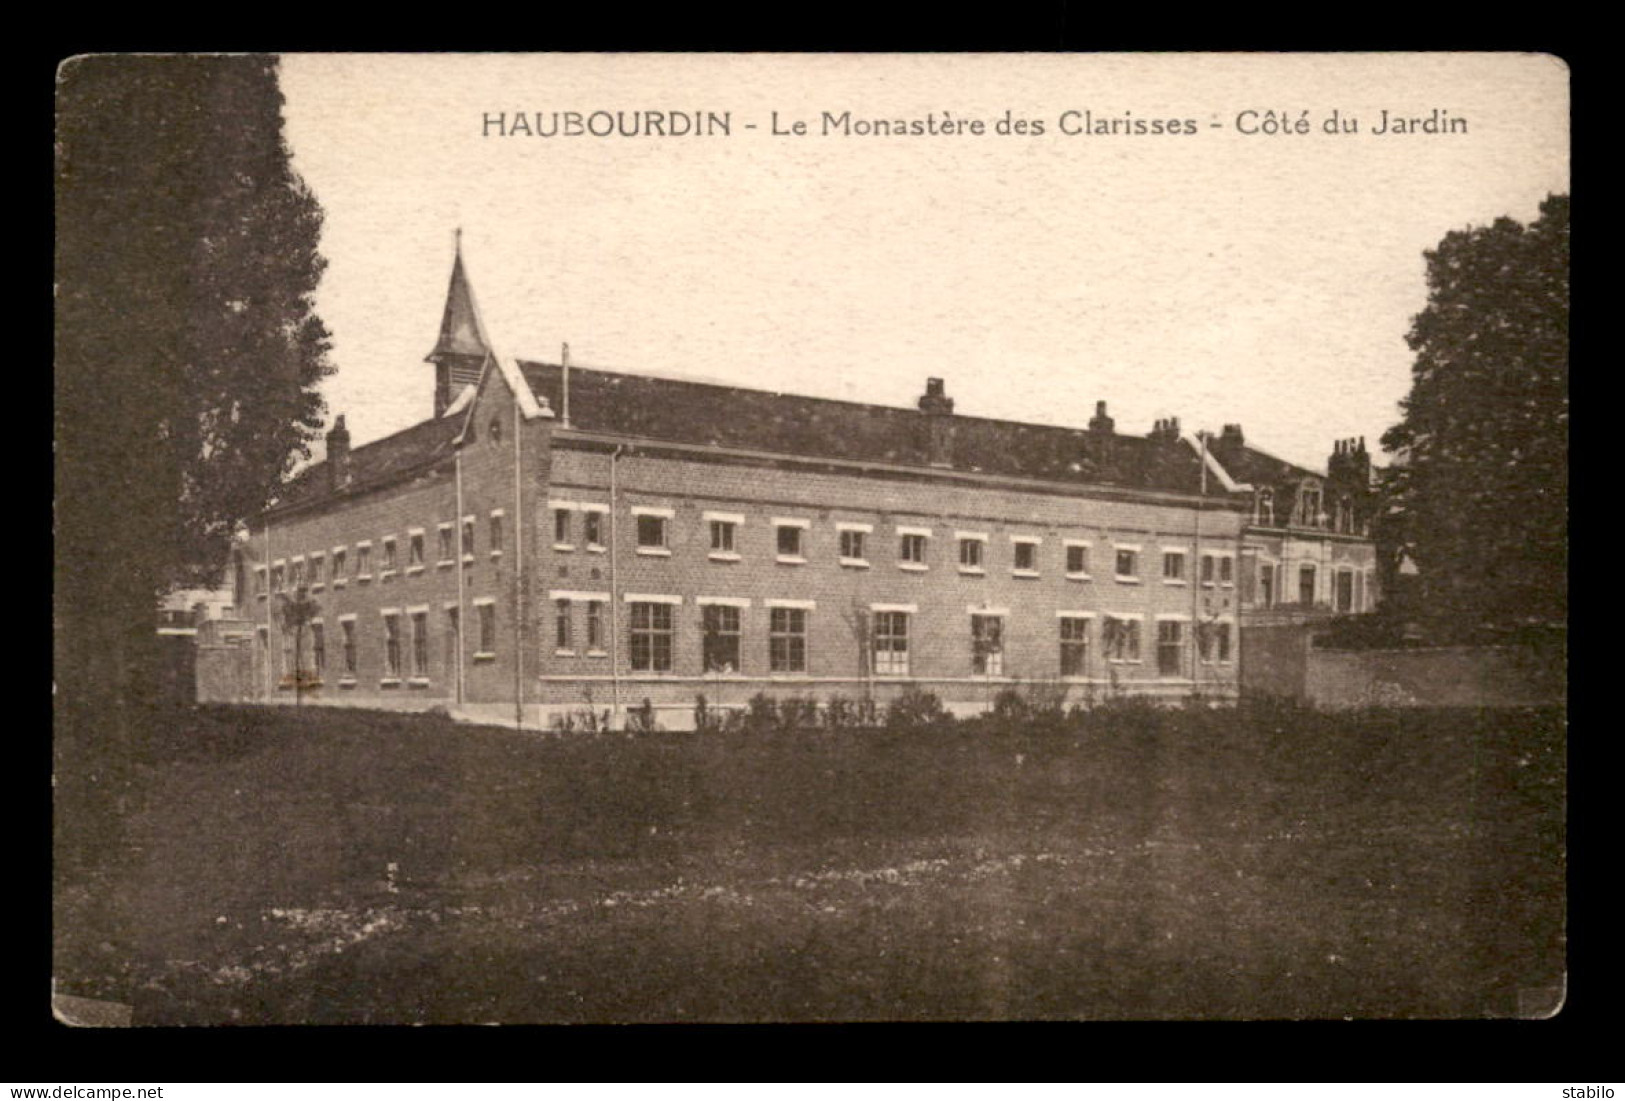 59 - HAUBOURDIN - LE MONASTERE DES CLARISSES - COTE DU JARDIN - Haubourdin